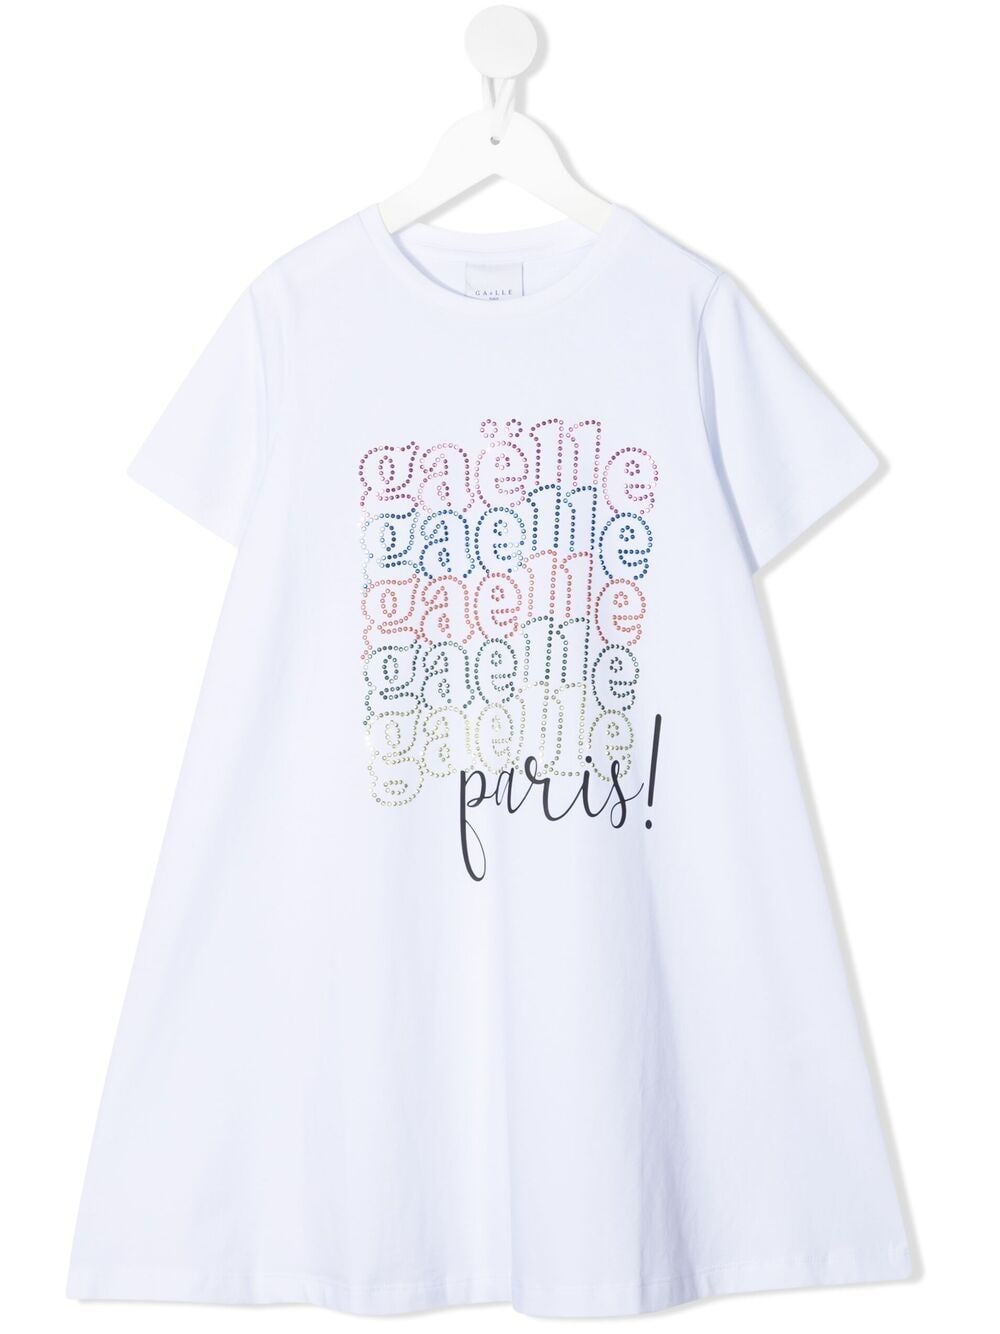 фото Gaelle paris kids платье-футболка с заклепками и логотипом